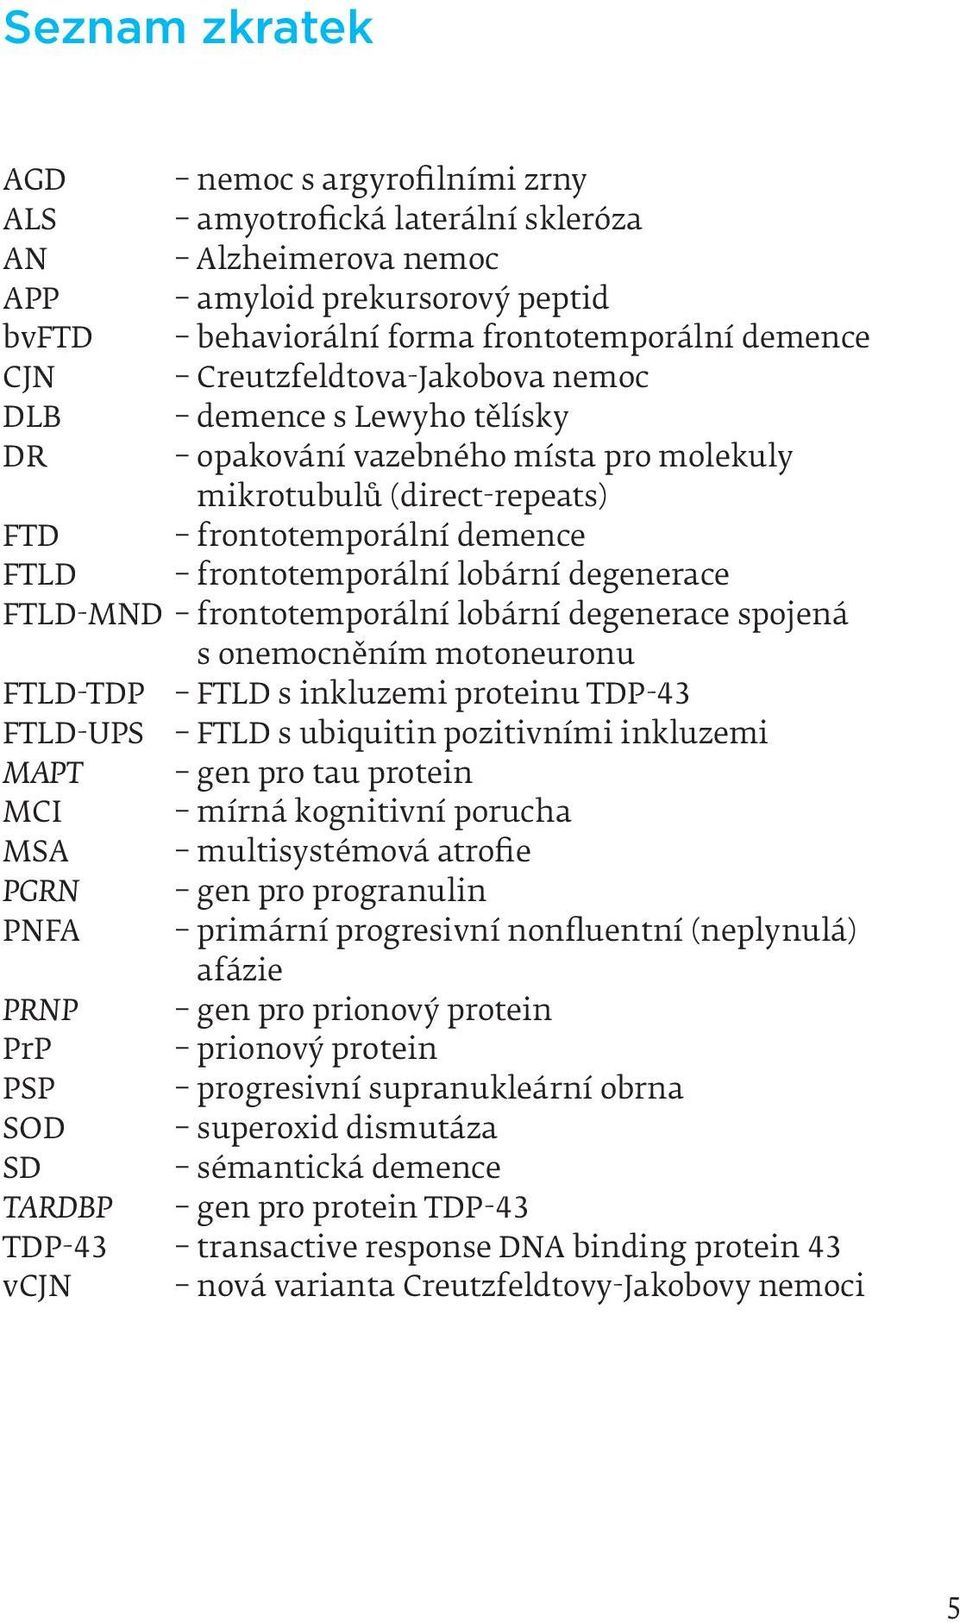 FTLD-MND frontotemporální lobární degenerace spojená s onemocněním motoneuronu FTLD-TDP FTLD s inkluzemi proteinu TDP-43 FTLD-UPS FTLD s ubiquitin pozitivními inkluzemi MAPT gen pro tau protein MCI